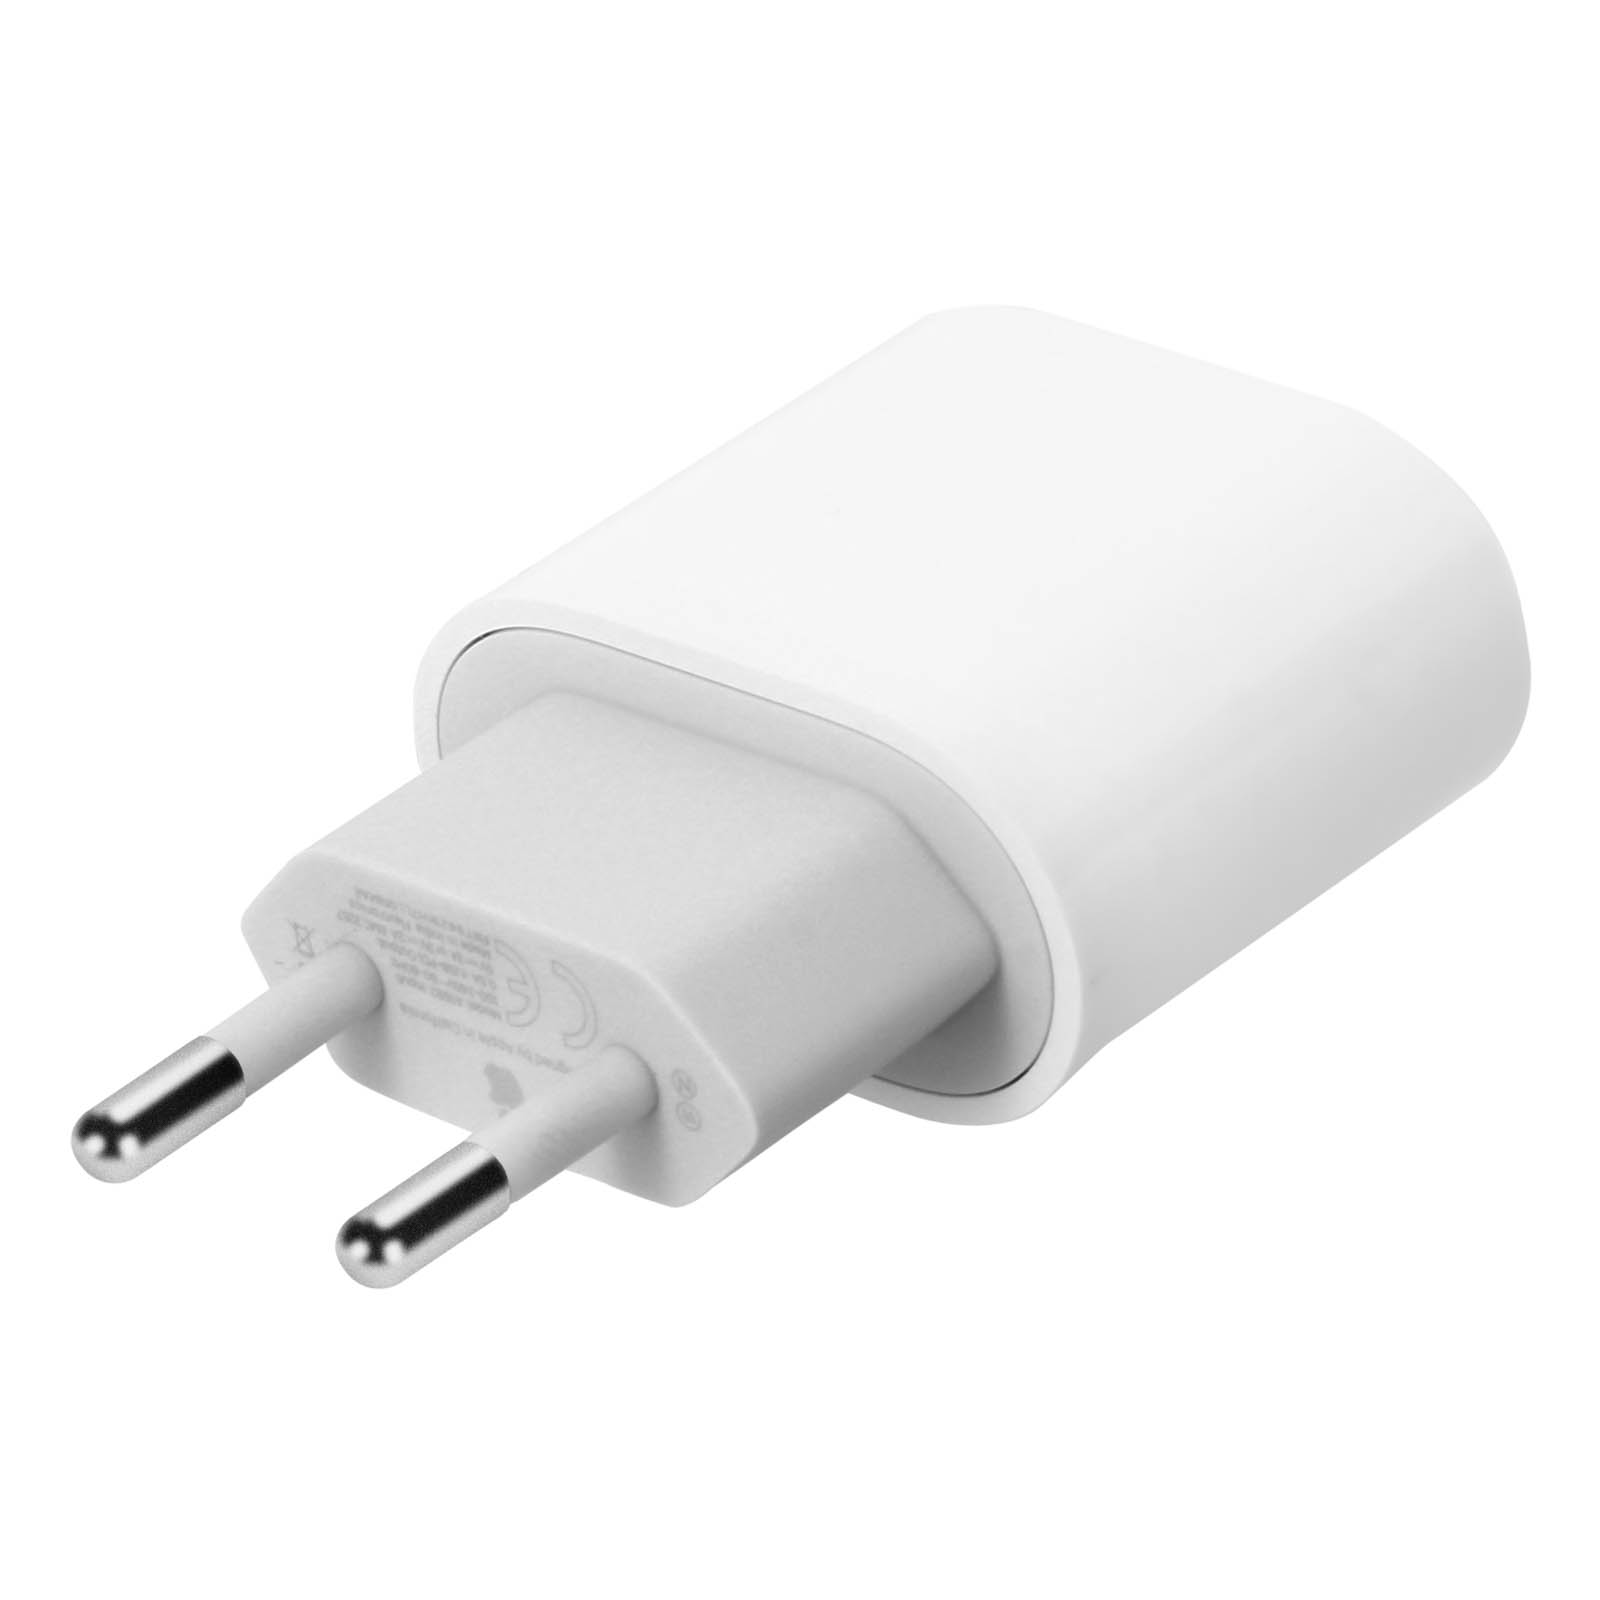 Chargeur iPhone 20W USB-C d'origine Apple pour iPhone et iPad - Blanc -  Français